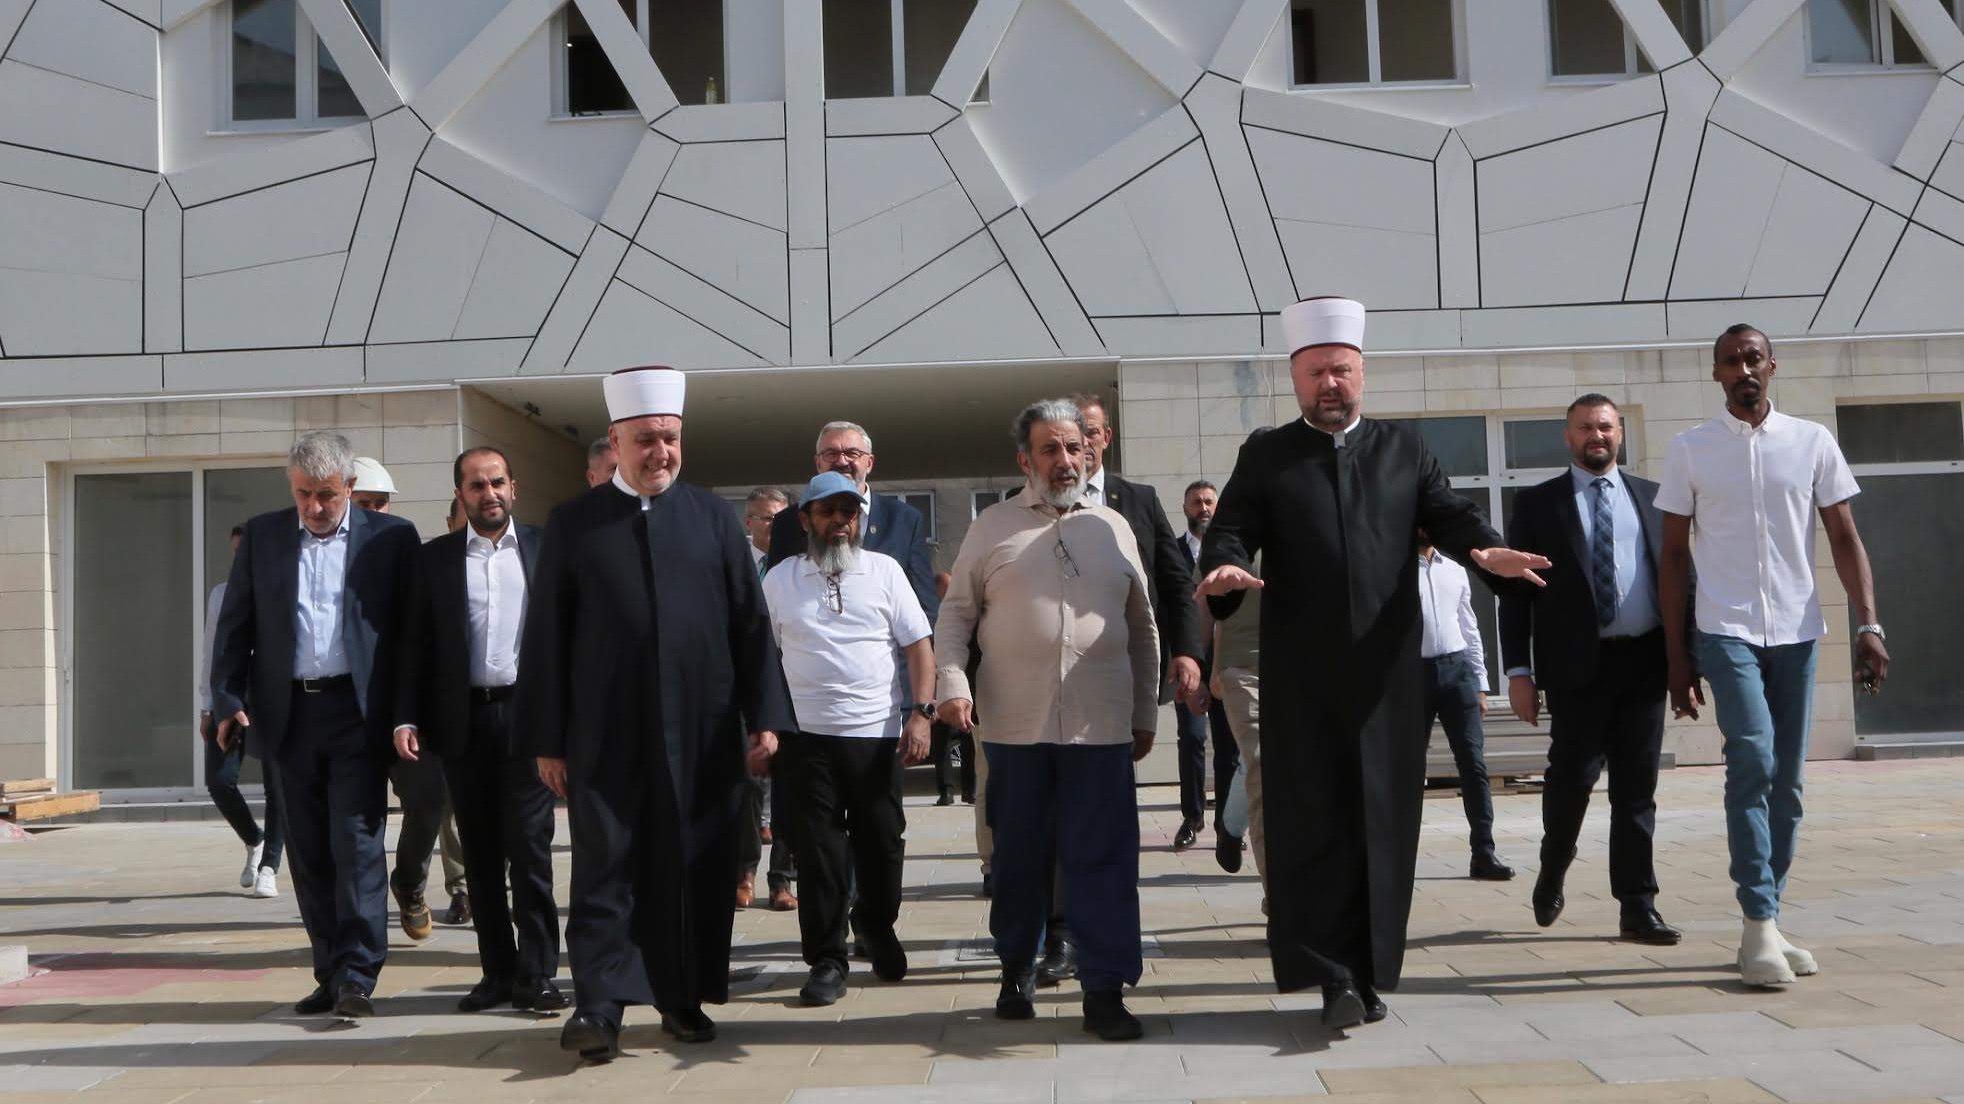 Ministar vakufa i islamskih pitanja Države Katar posjetio Zenicu (VIDEO)